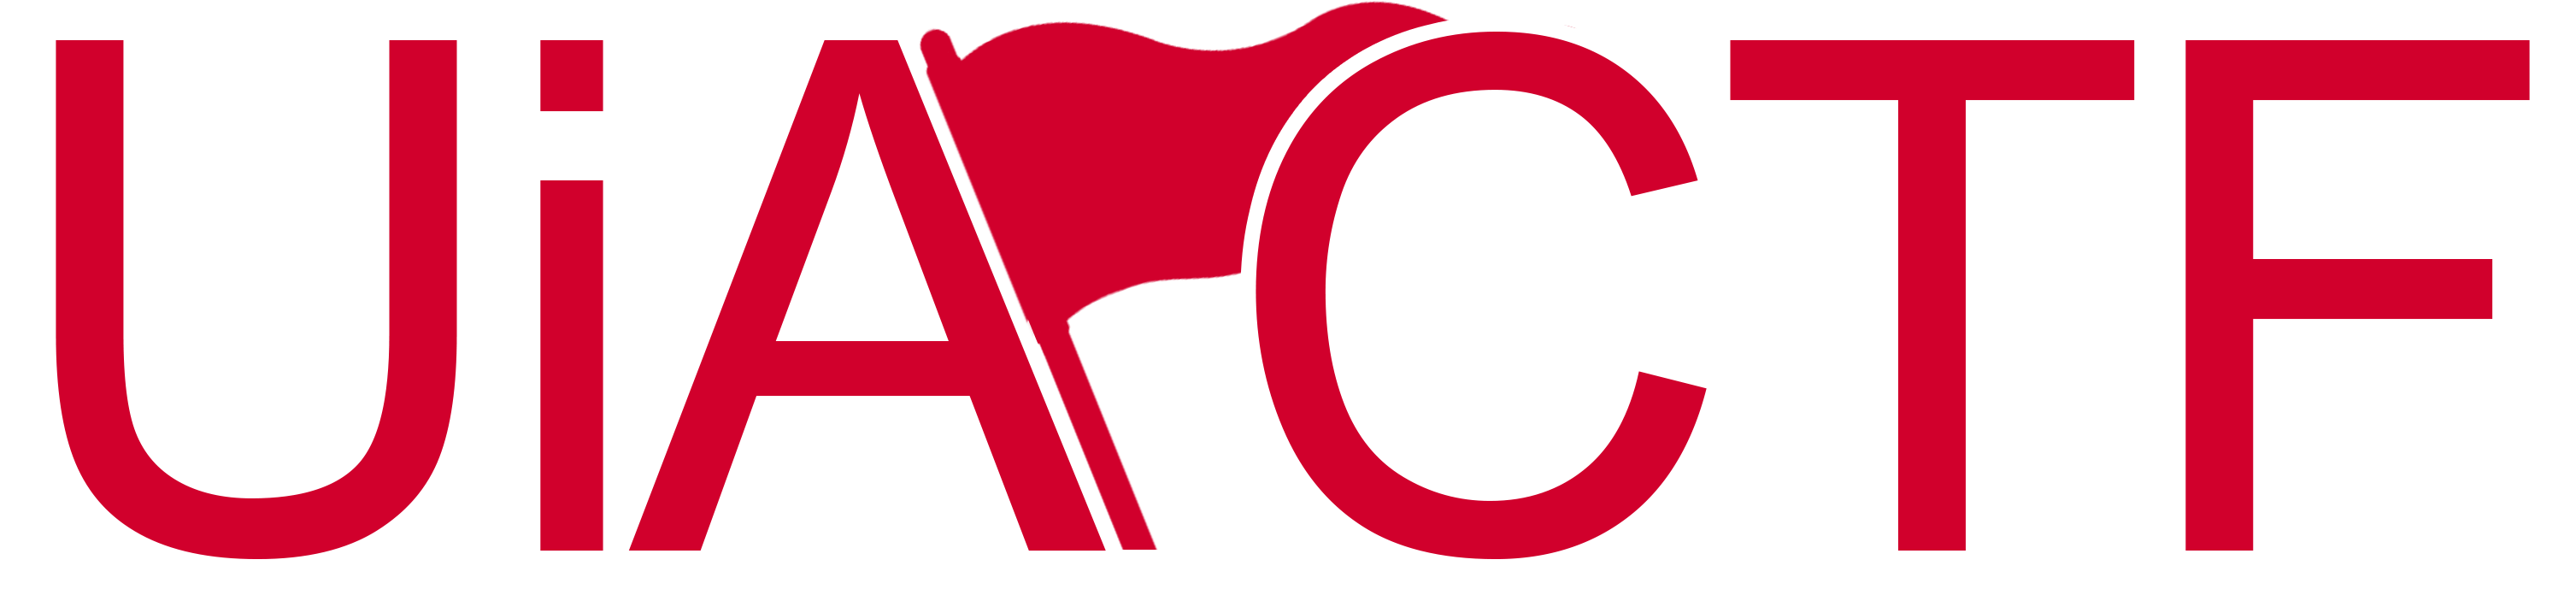 uiactf-logo